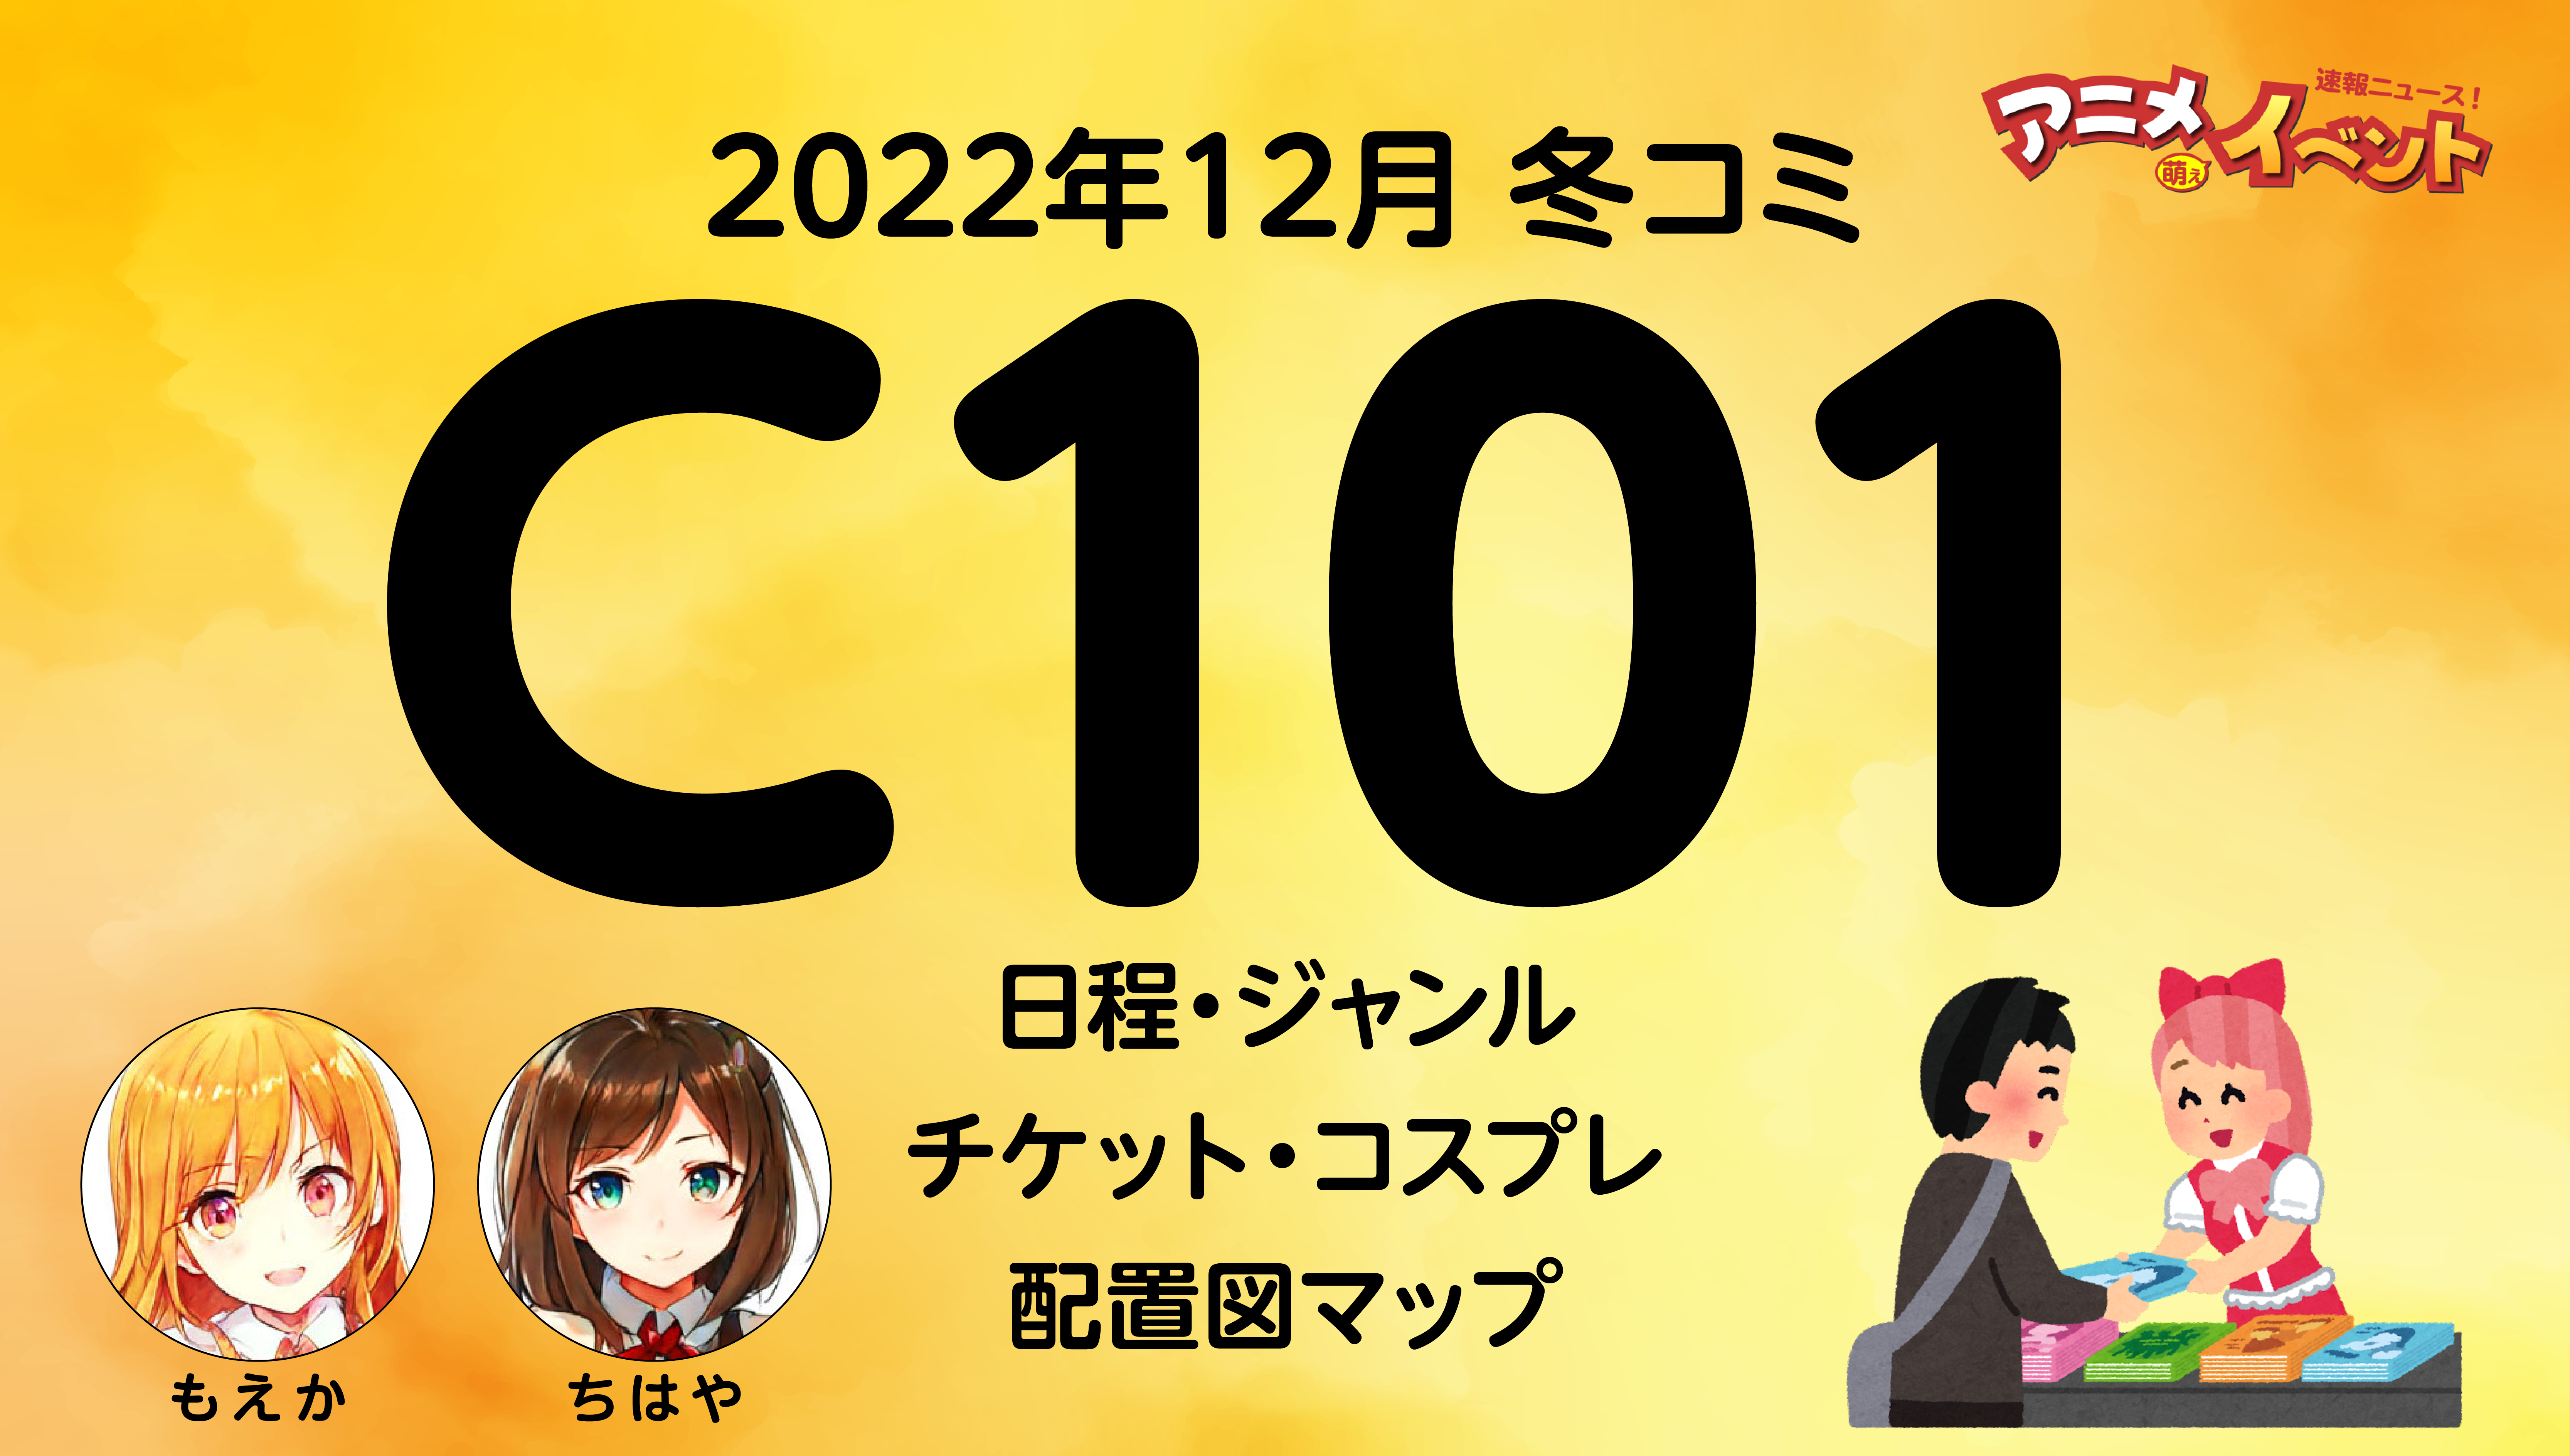 コミケ c101 2日目 コミックマーケット サークルチケット サクチケ 12